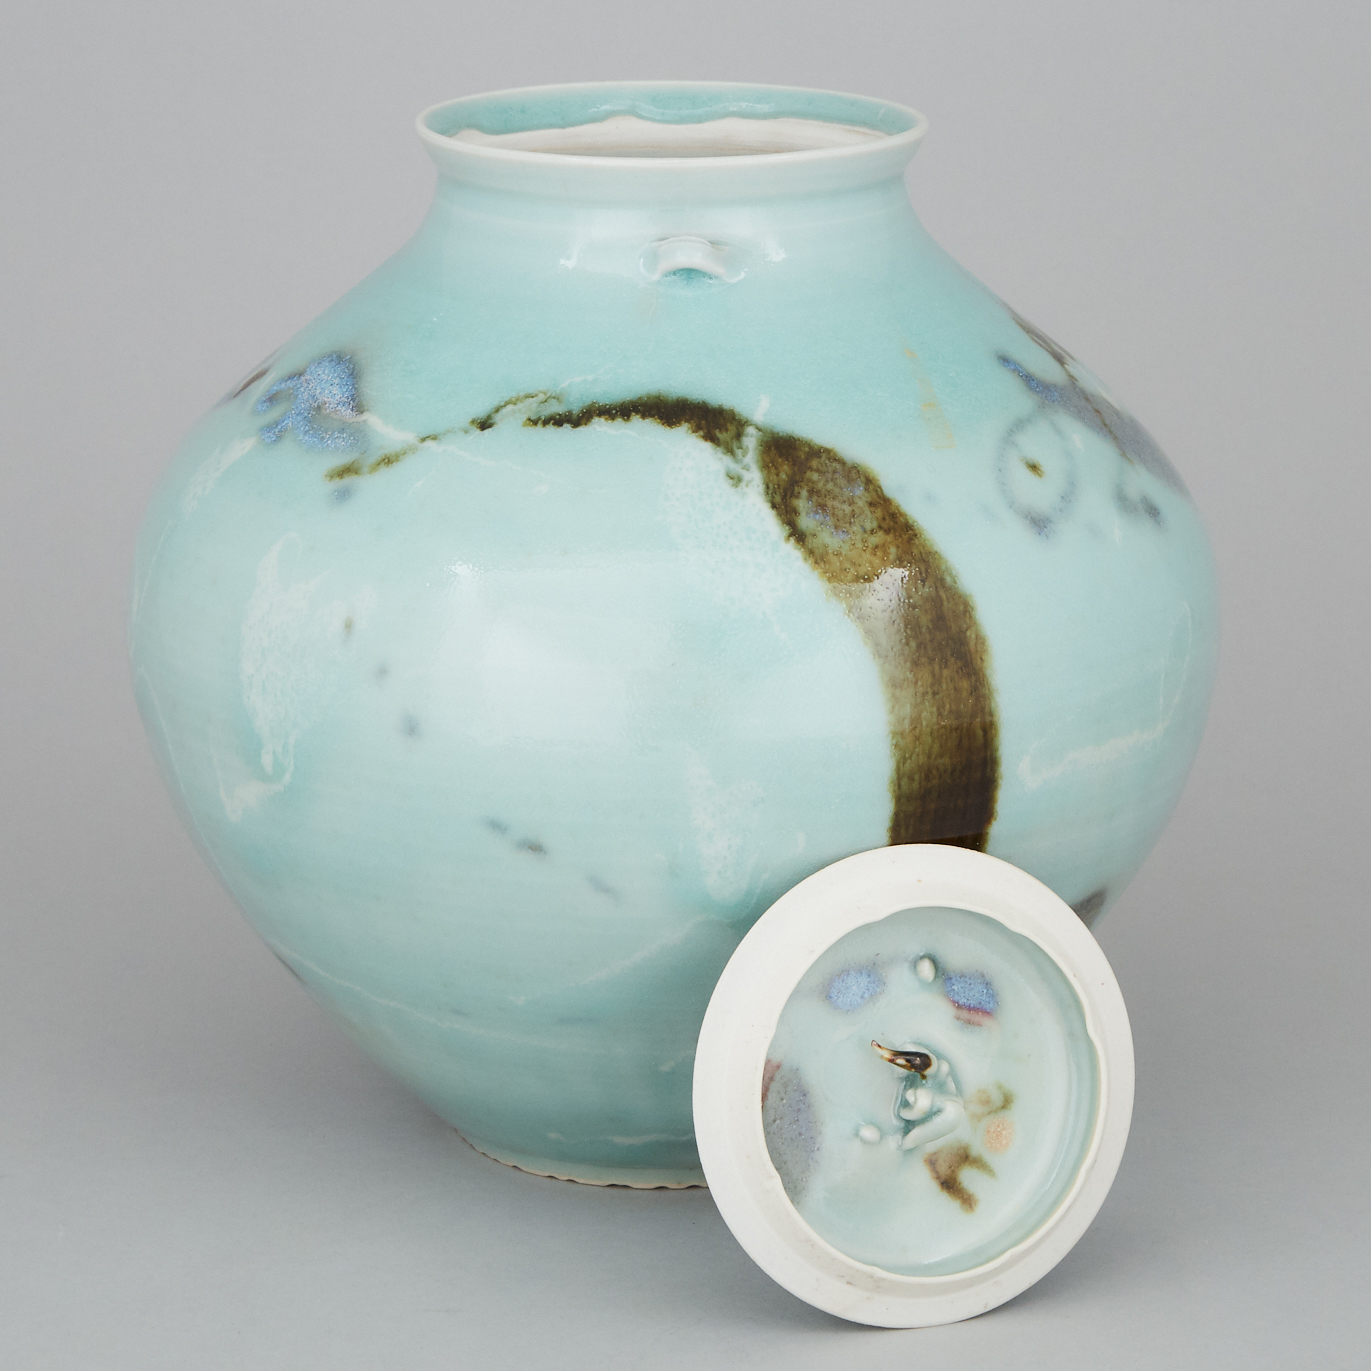 Kayo O'Young (Canadian, b.1950), Large Celadon Glaze Ginger Jar, 1994